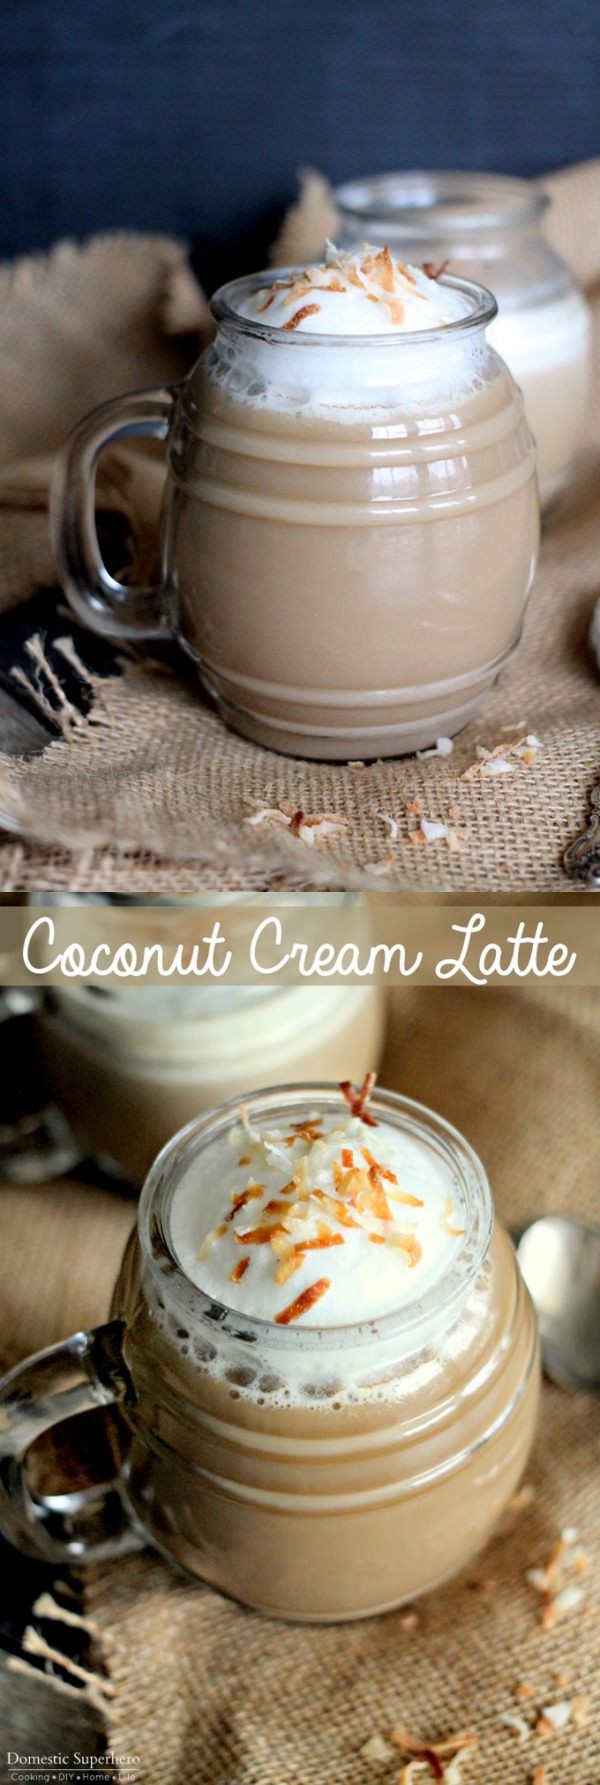 Coconut Cream Latte